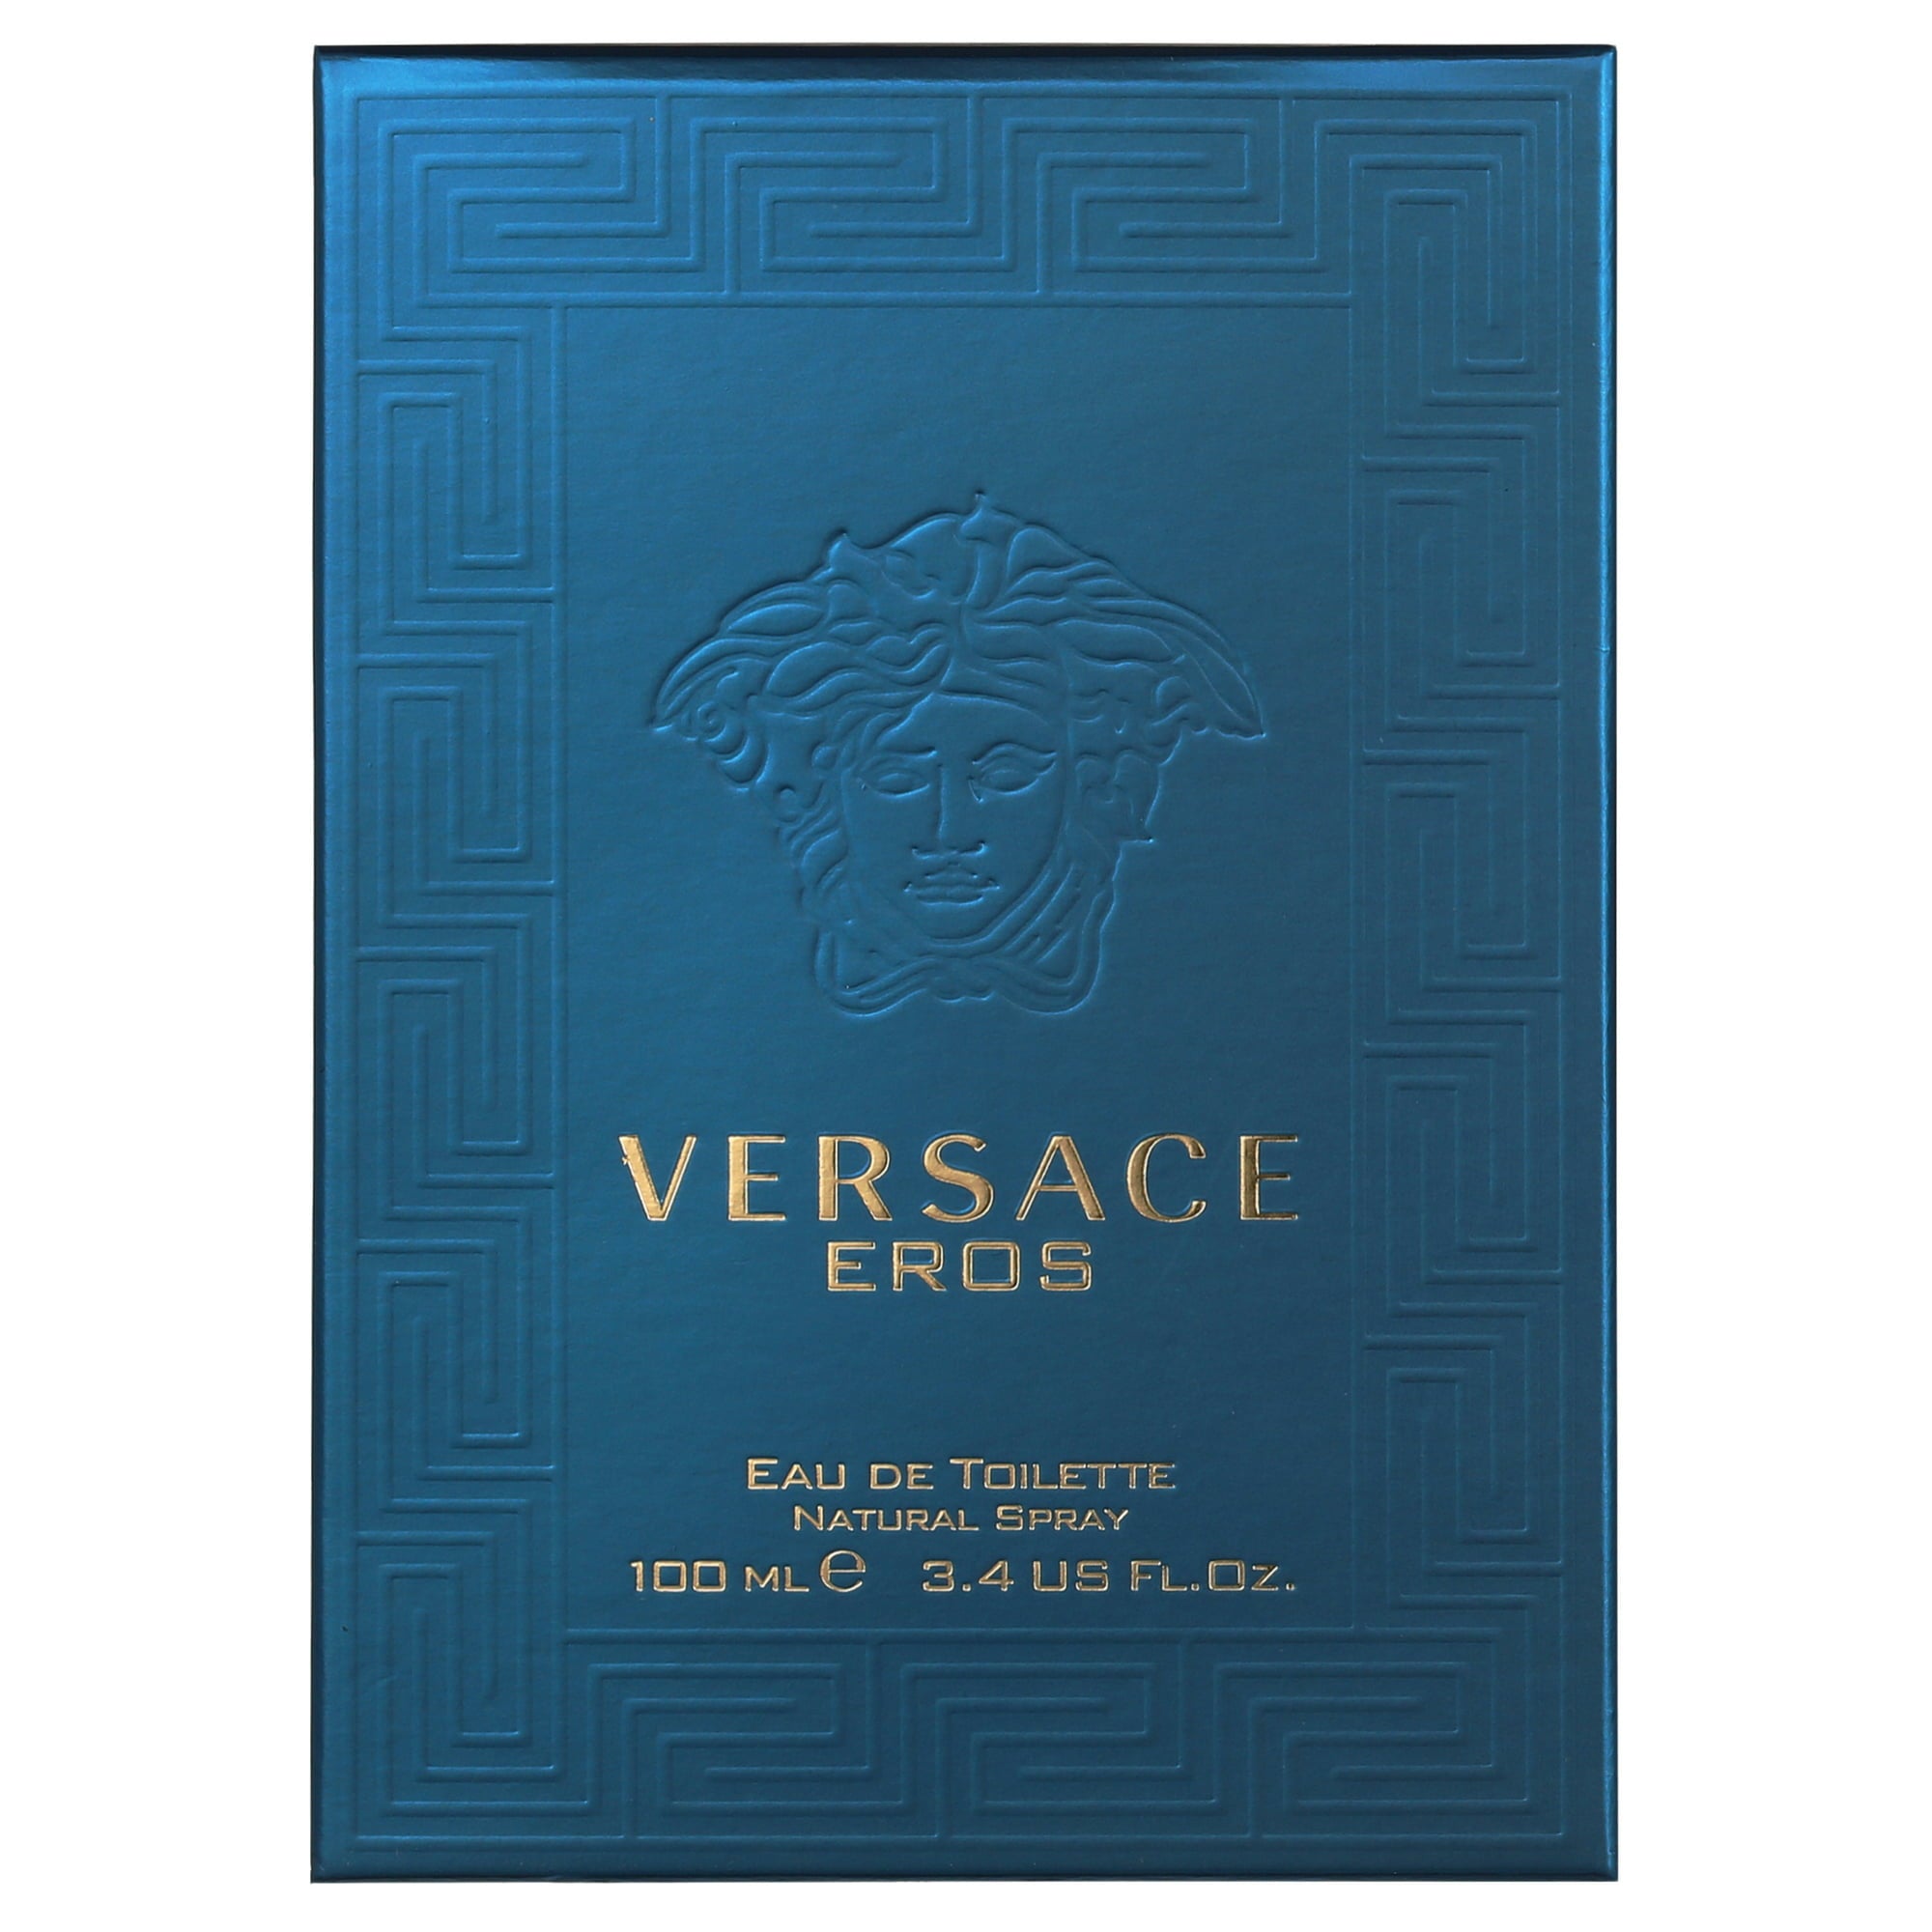 Versace Eros Eau De Toilette, Cologne for Men, 3.4 oz